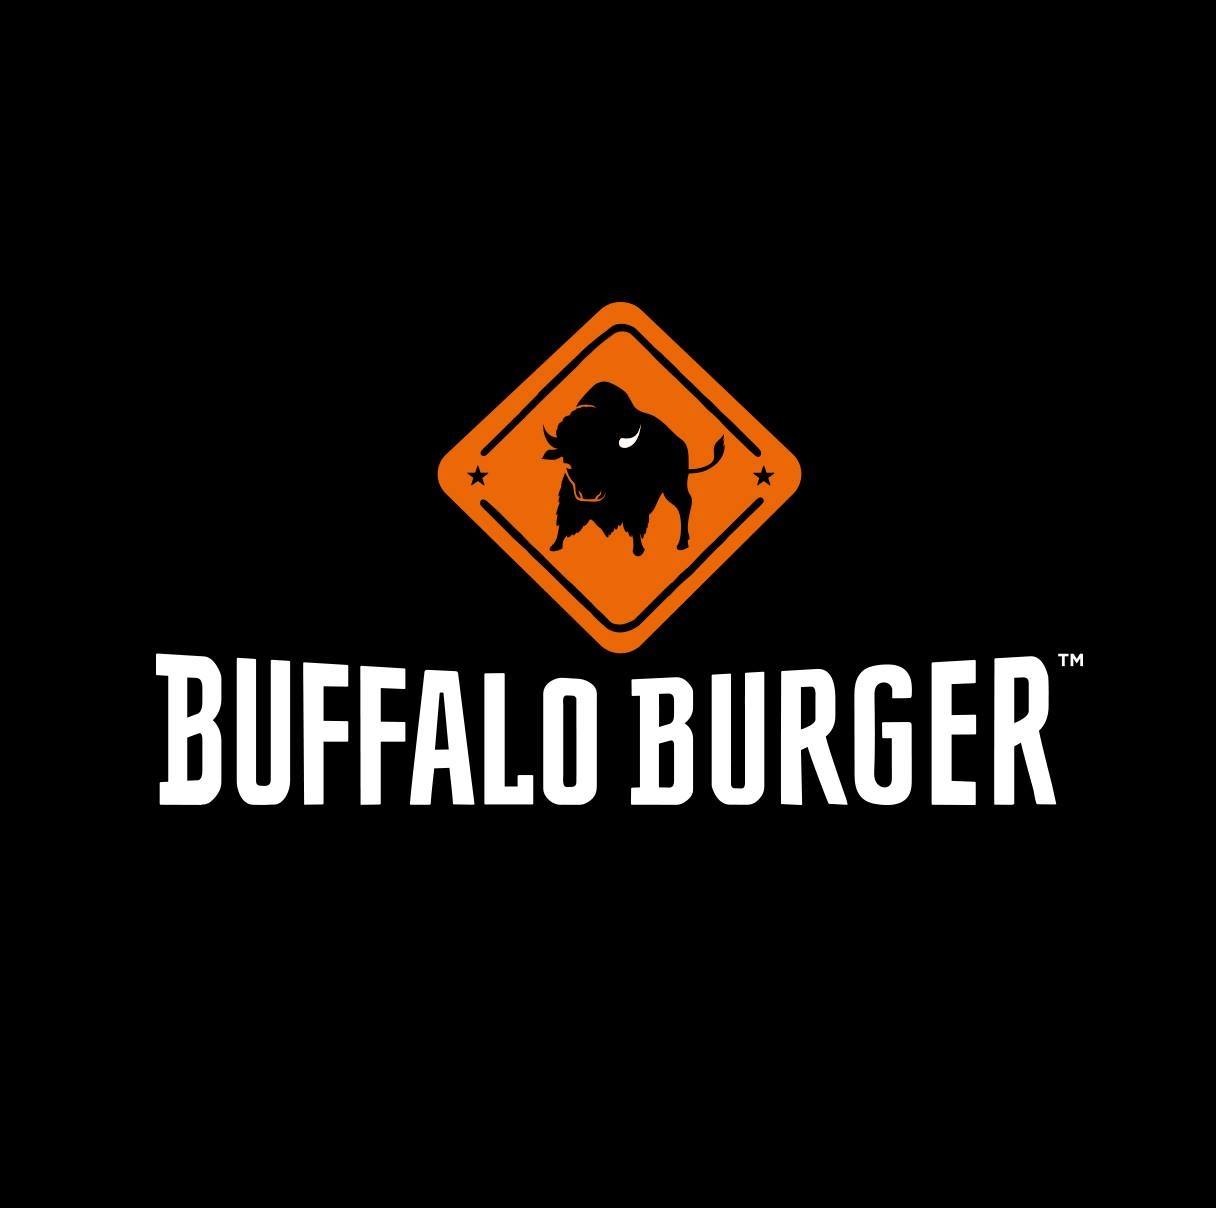 Buffalo burger brand